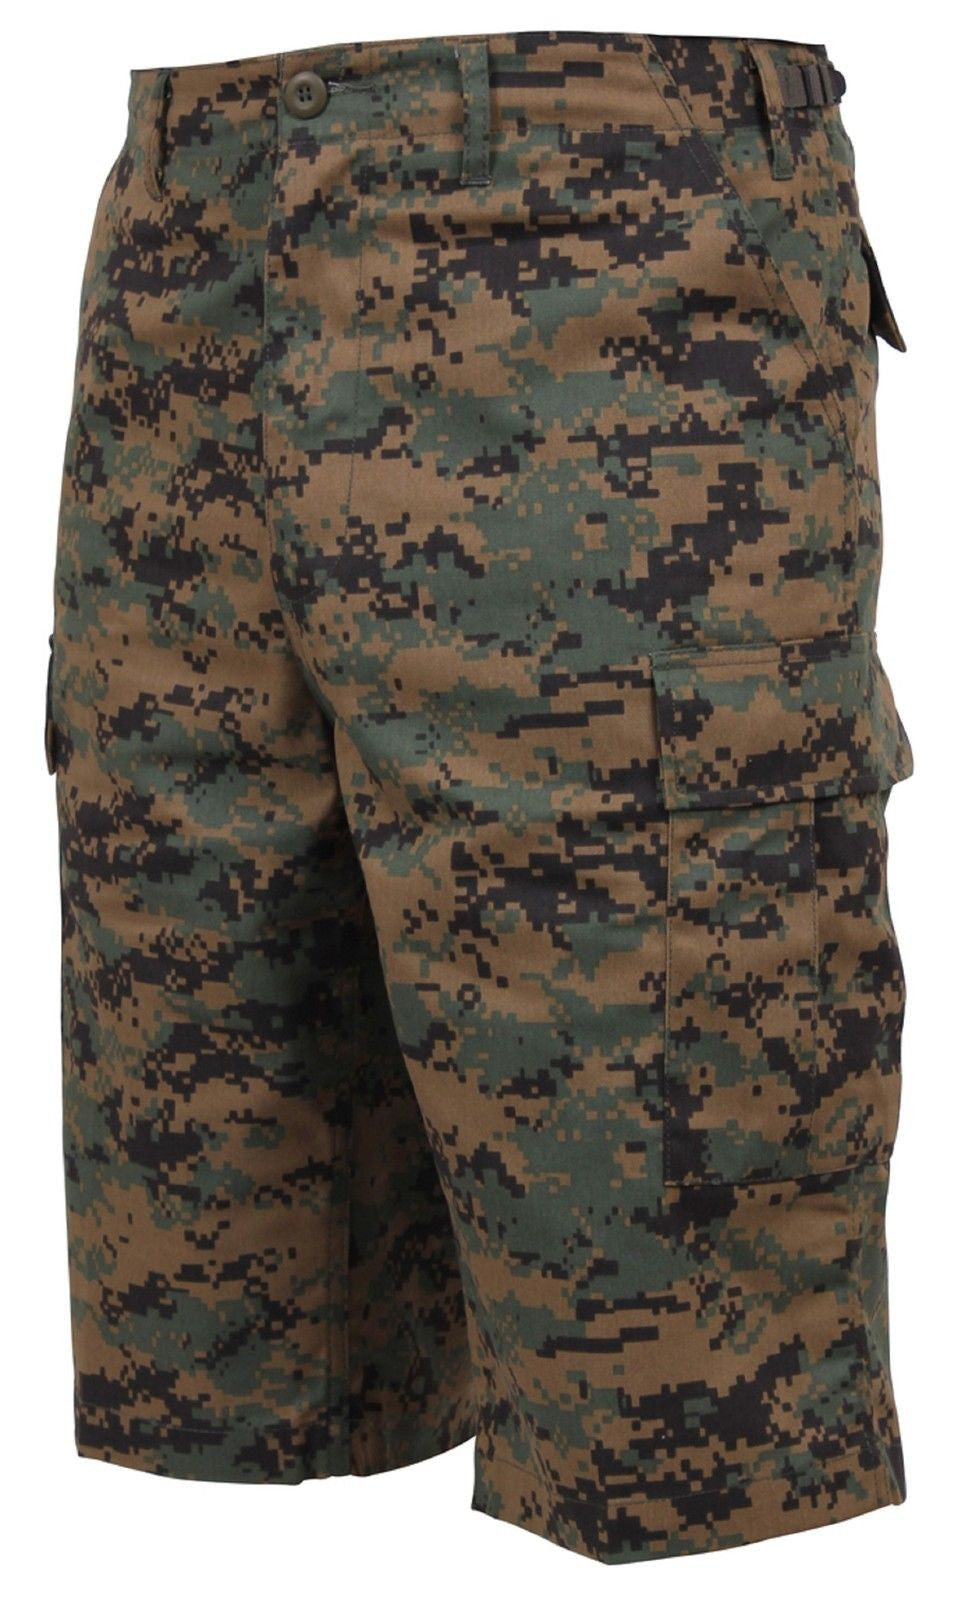 camouflage cargo shorts